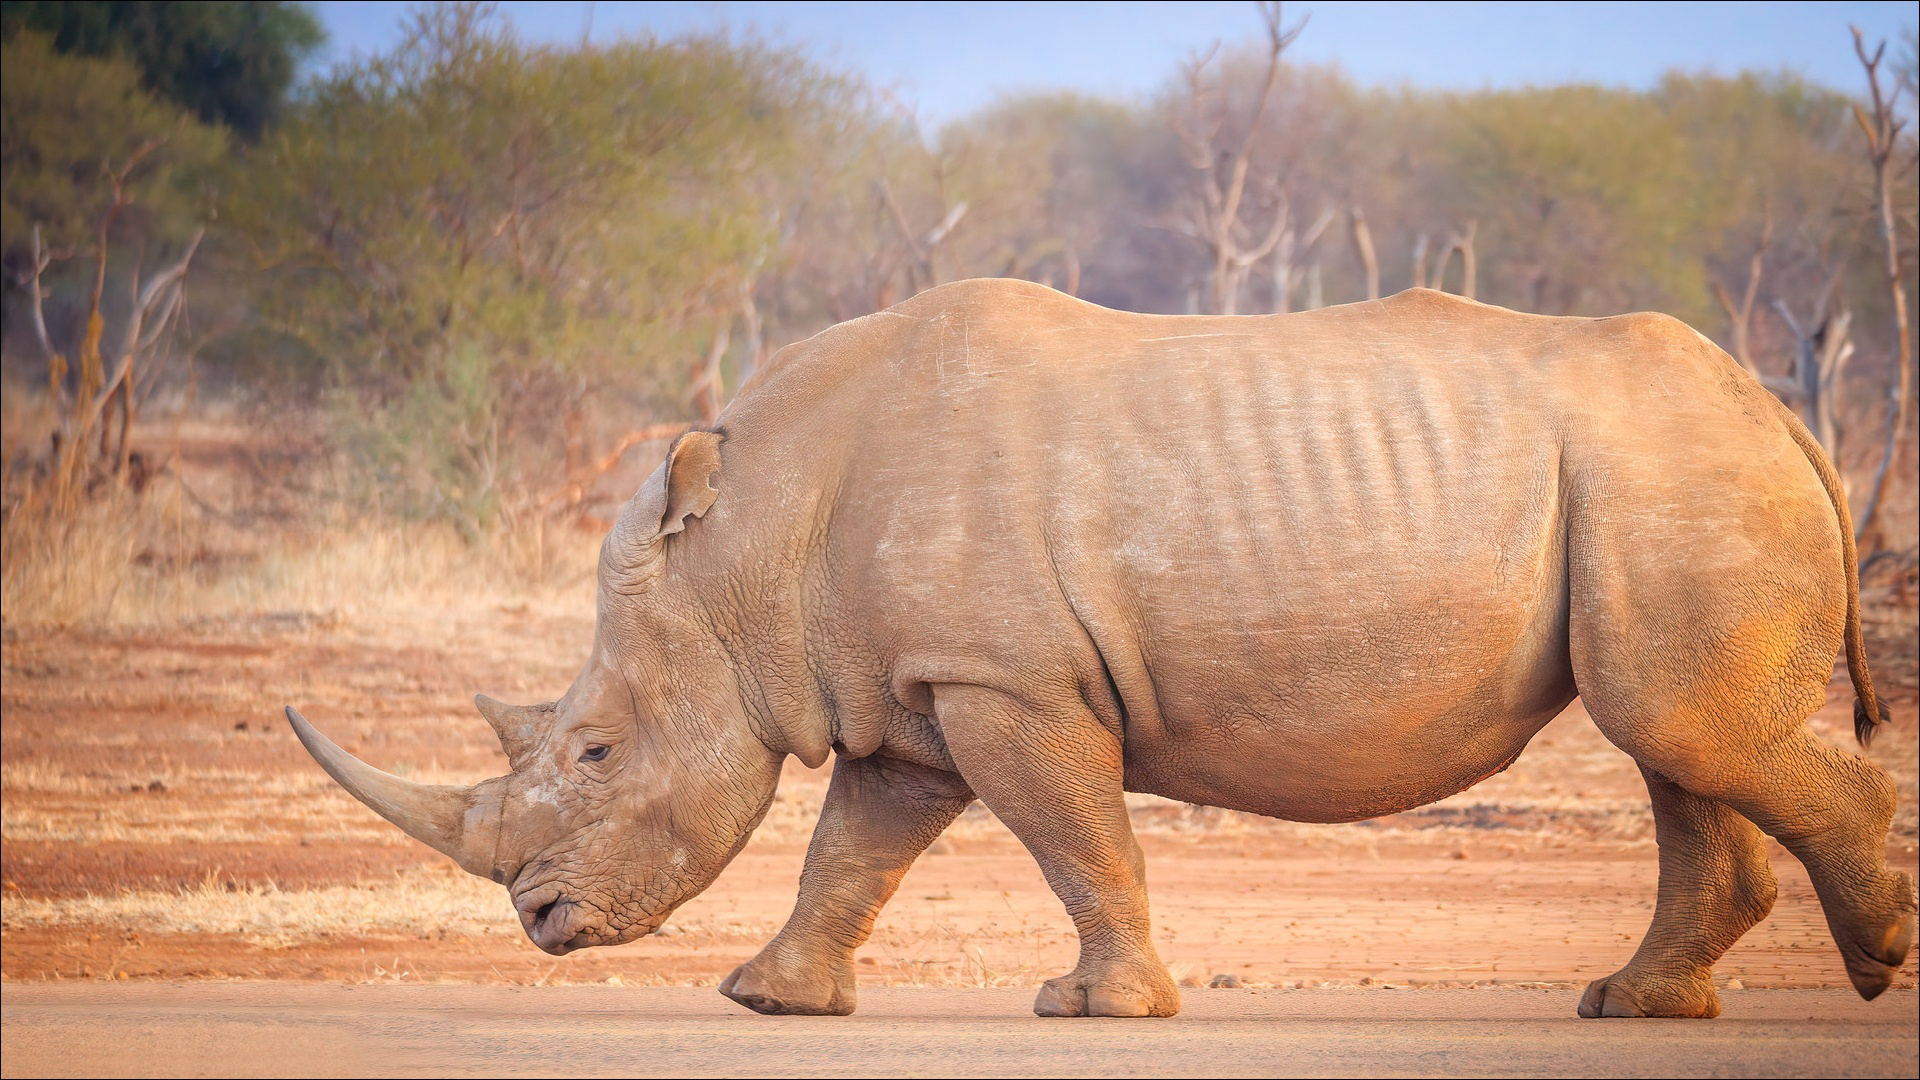 Rhino Is Walking On Road In Blur Forest Wallpaper HD Rhino